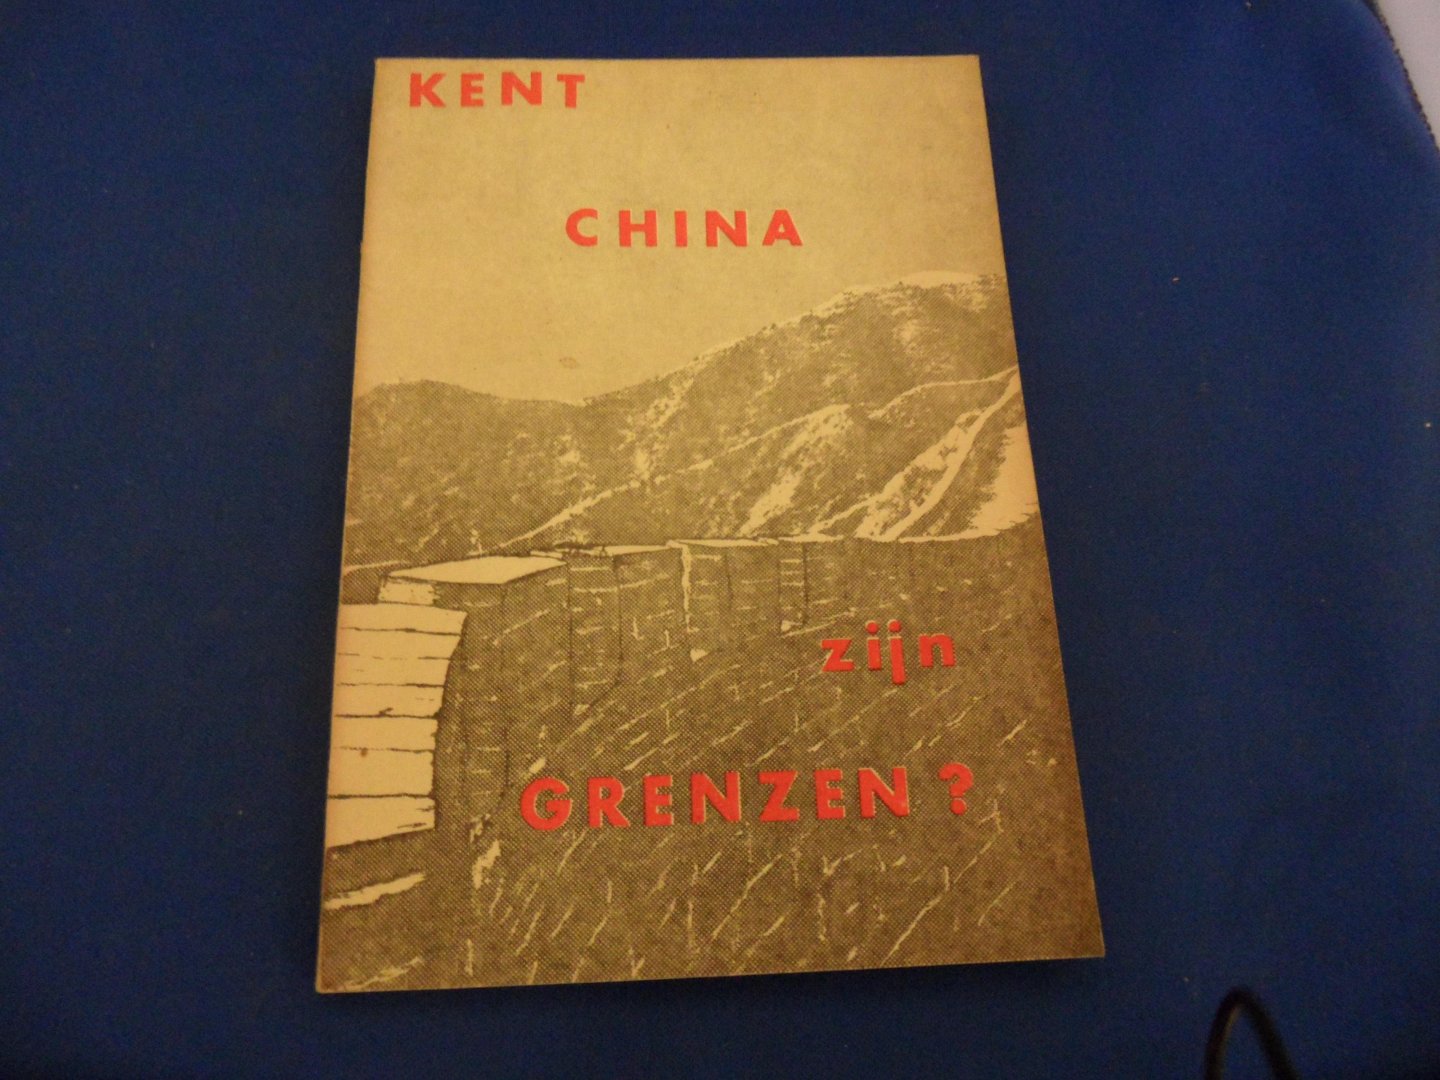 Linden, Wim J. van der (red) - Kent China zijn grenzen?